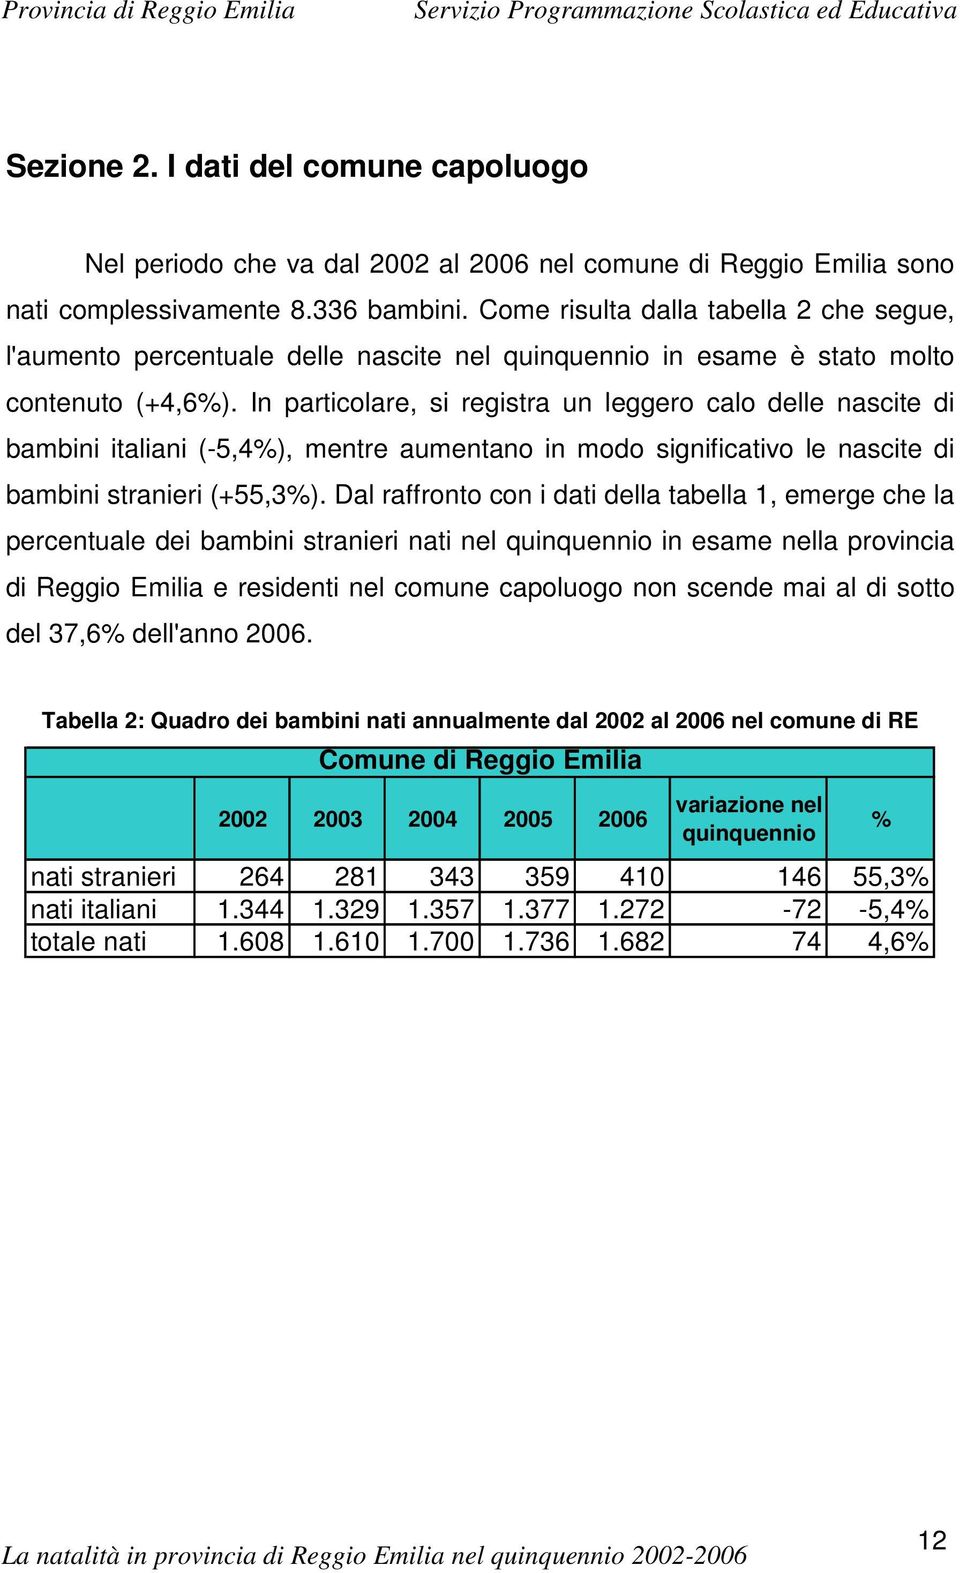 In particolare, si registra un leggero calo delle nascite di bambini italiani (-5,4%), mentre aumentano in modo significativo le nascite di bambini stranieri (+55,3%).